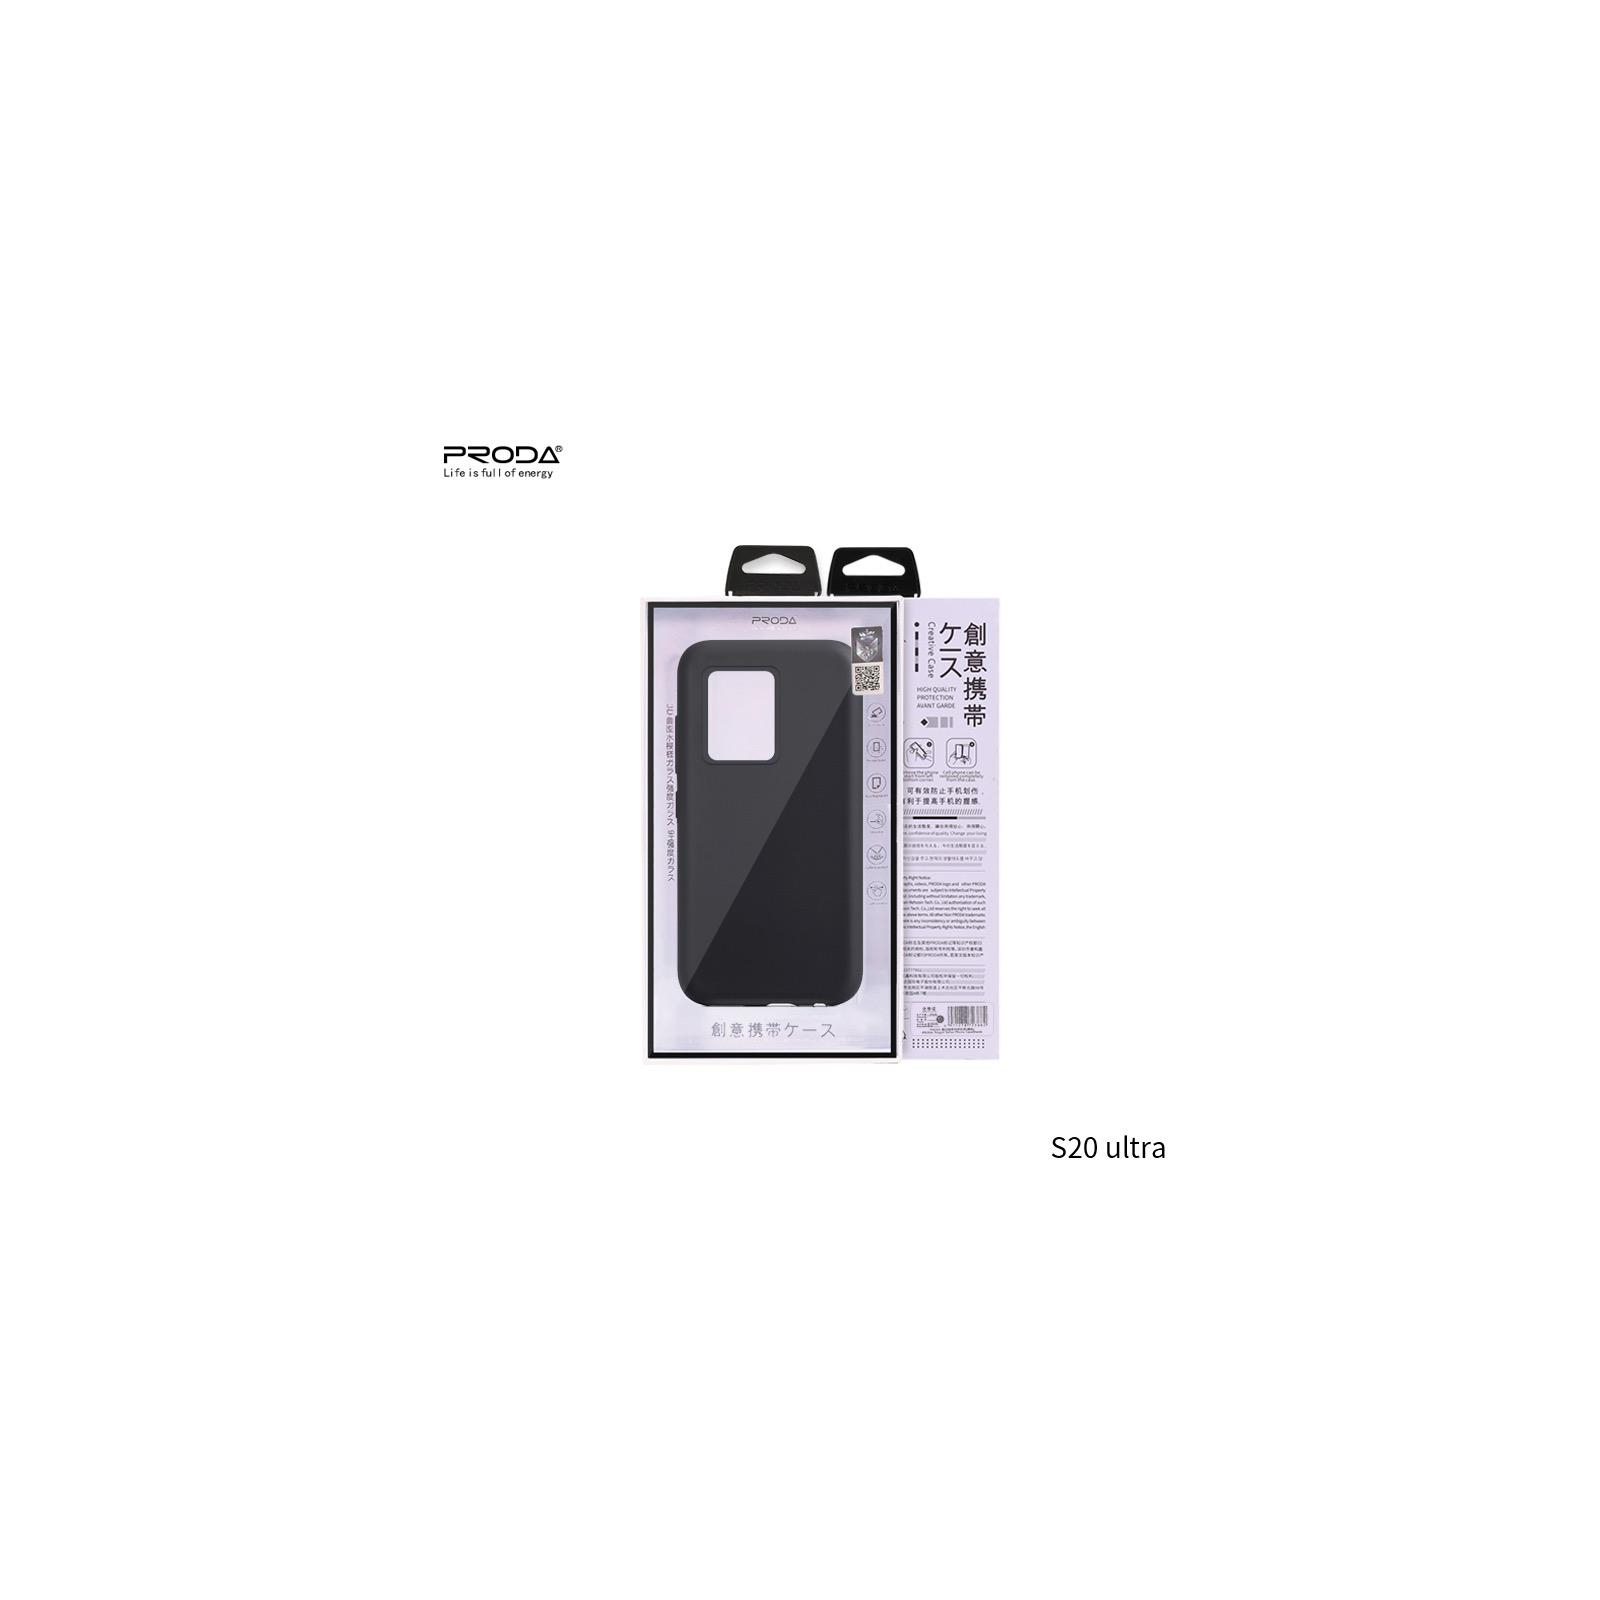 Чехол для мобильного телефона Proda Soft-Case для Samsung S20 ultra Black (XK-PRD-S20ultr-BK) изображение 2